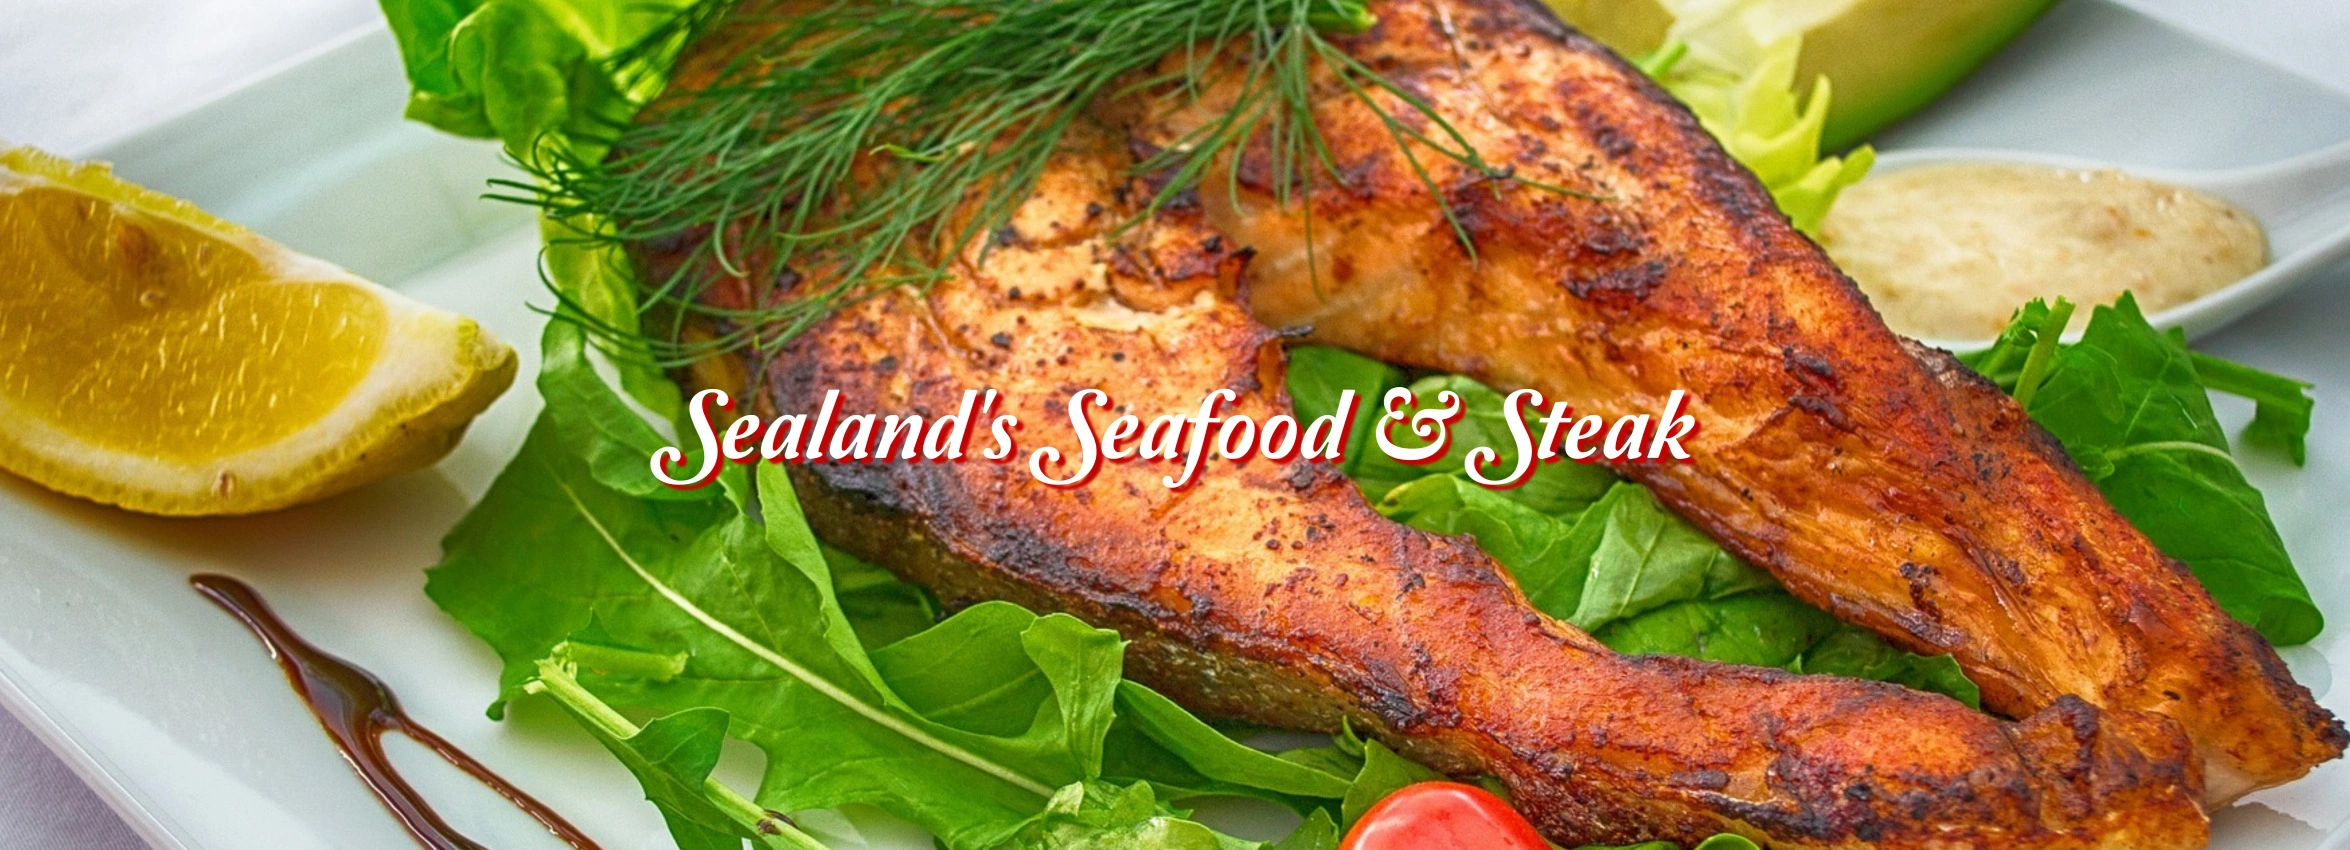 Sealands-Seafood-and-Steak_desktop_ET